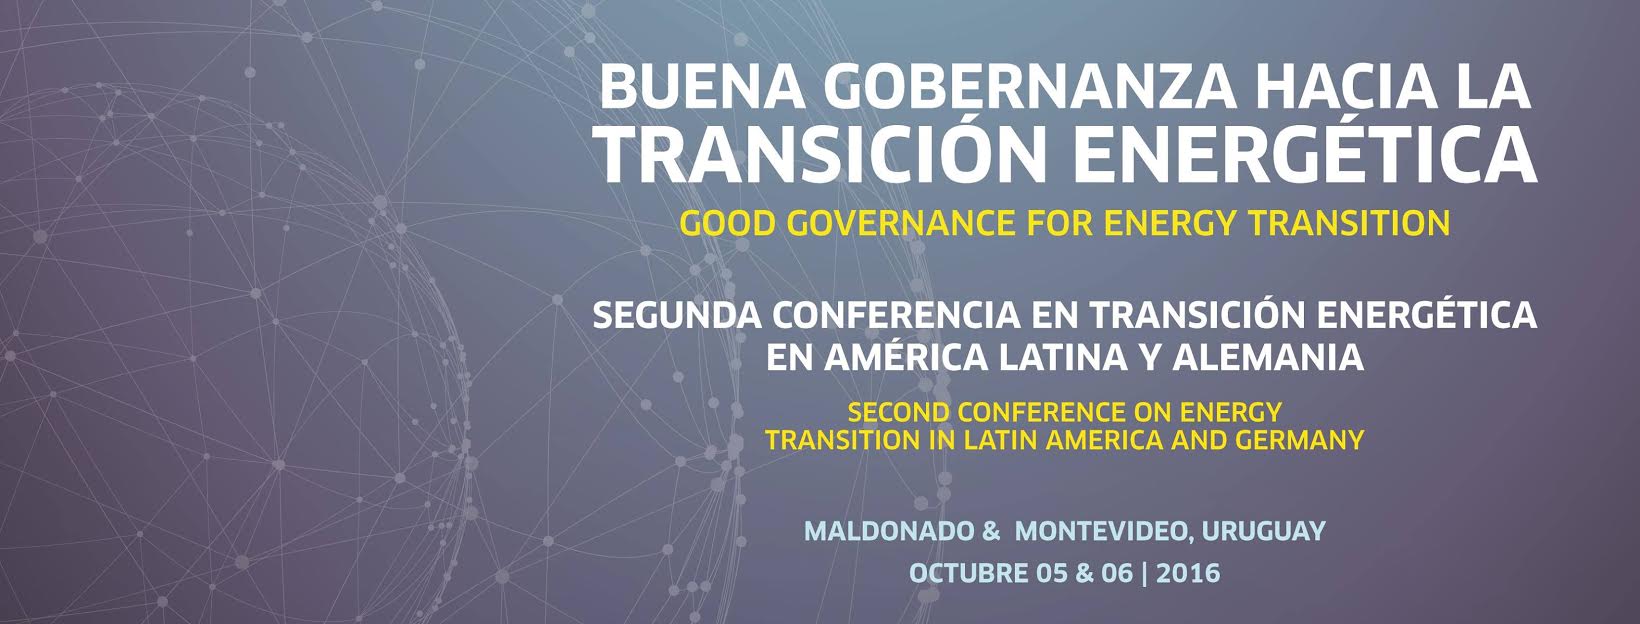 Expertos se reunirán en Uruguay para discutir sobre transición energética en América Latina y Alemania